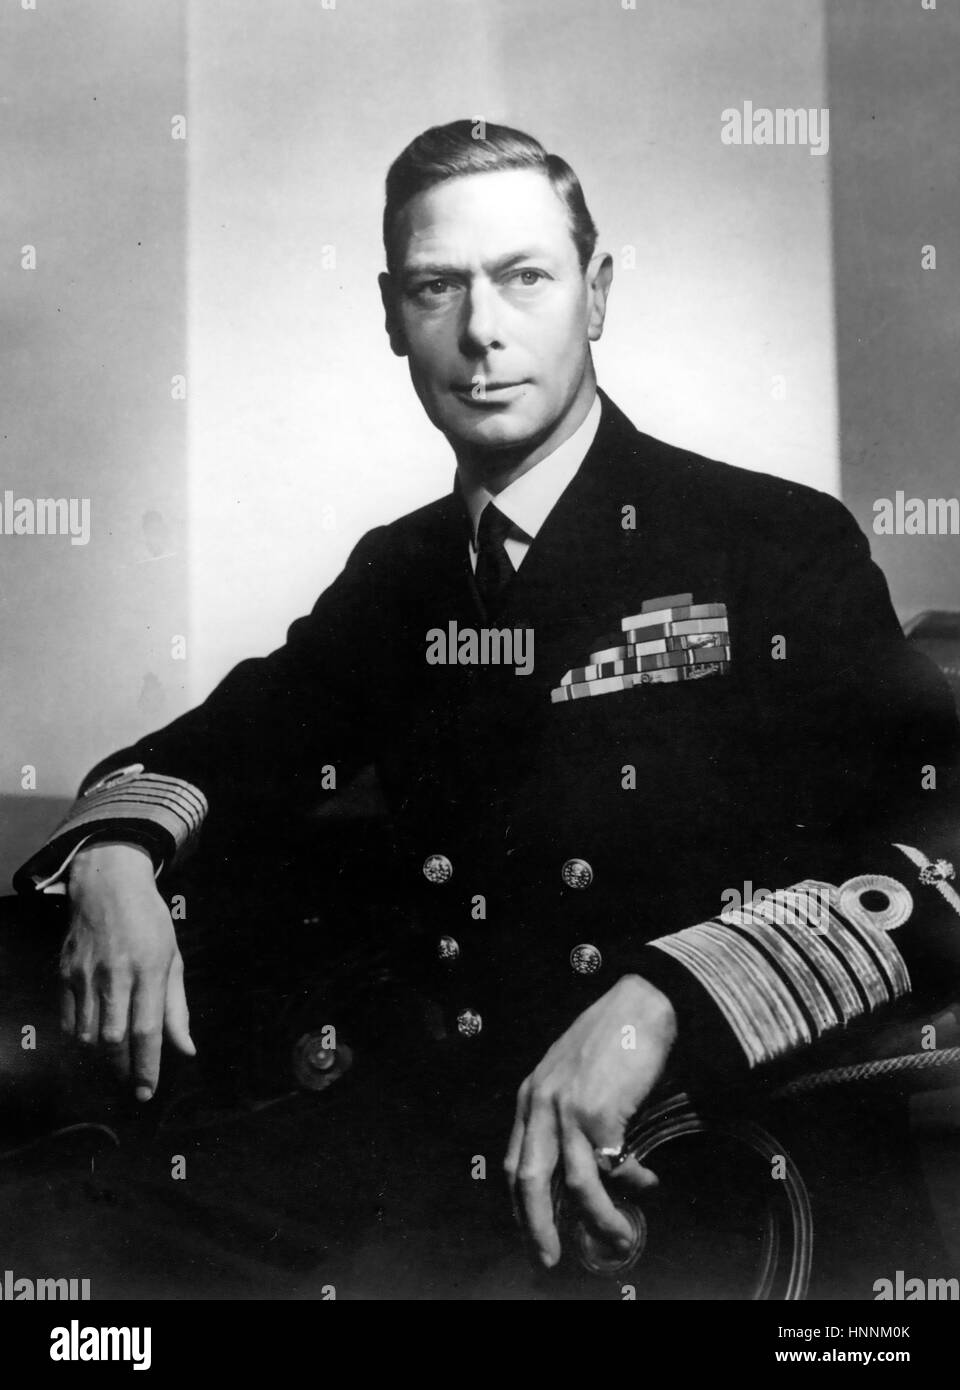 El rey Jorge VI (1895-1952) en el uniforme de Almirante de la flota el año 1945 Foto de stock